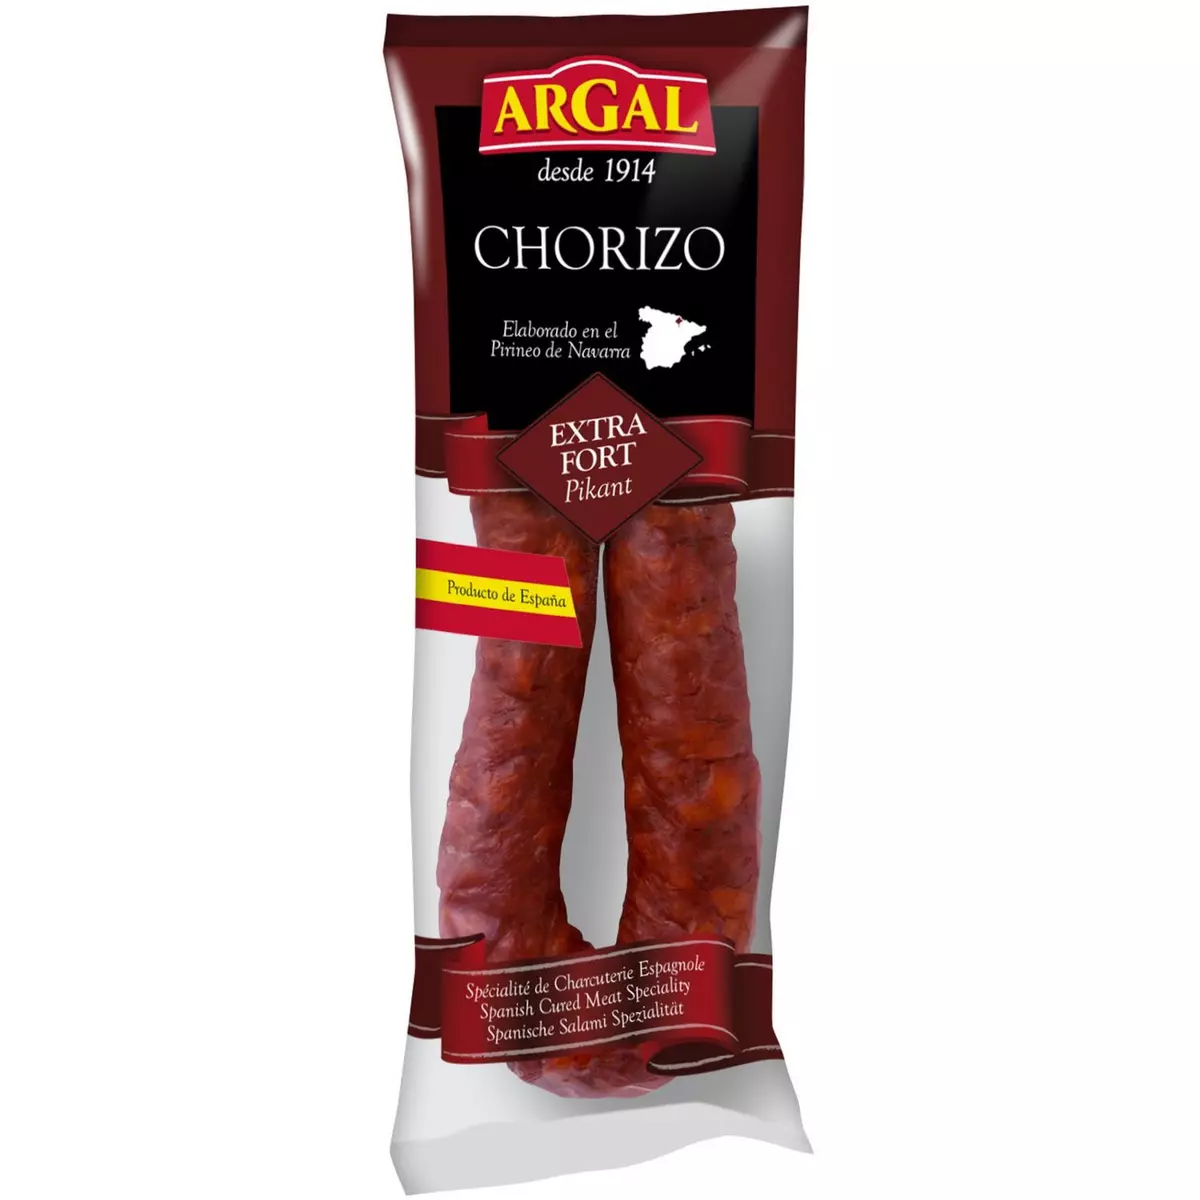 ARGAL Chorizo Sarta fort espagnol 200g